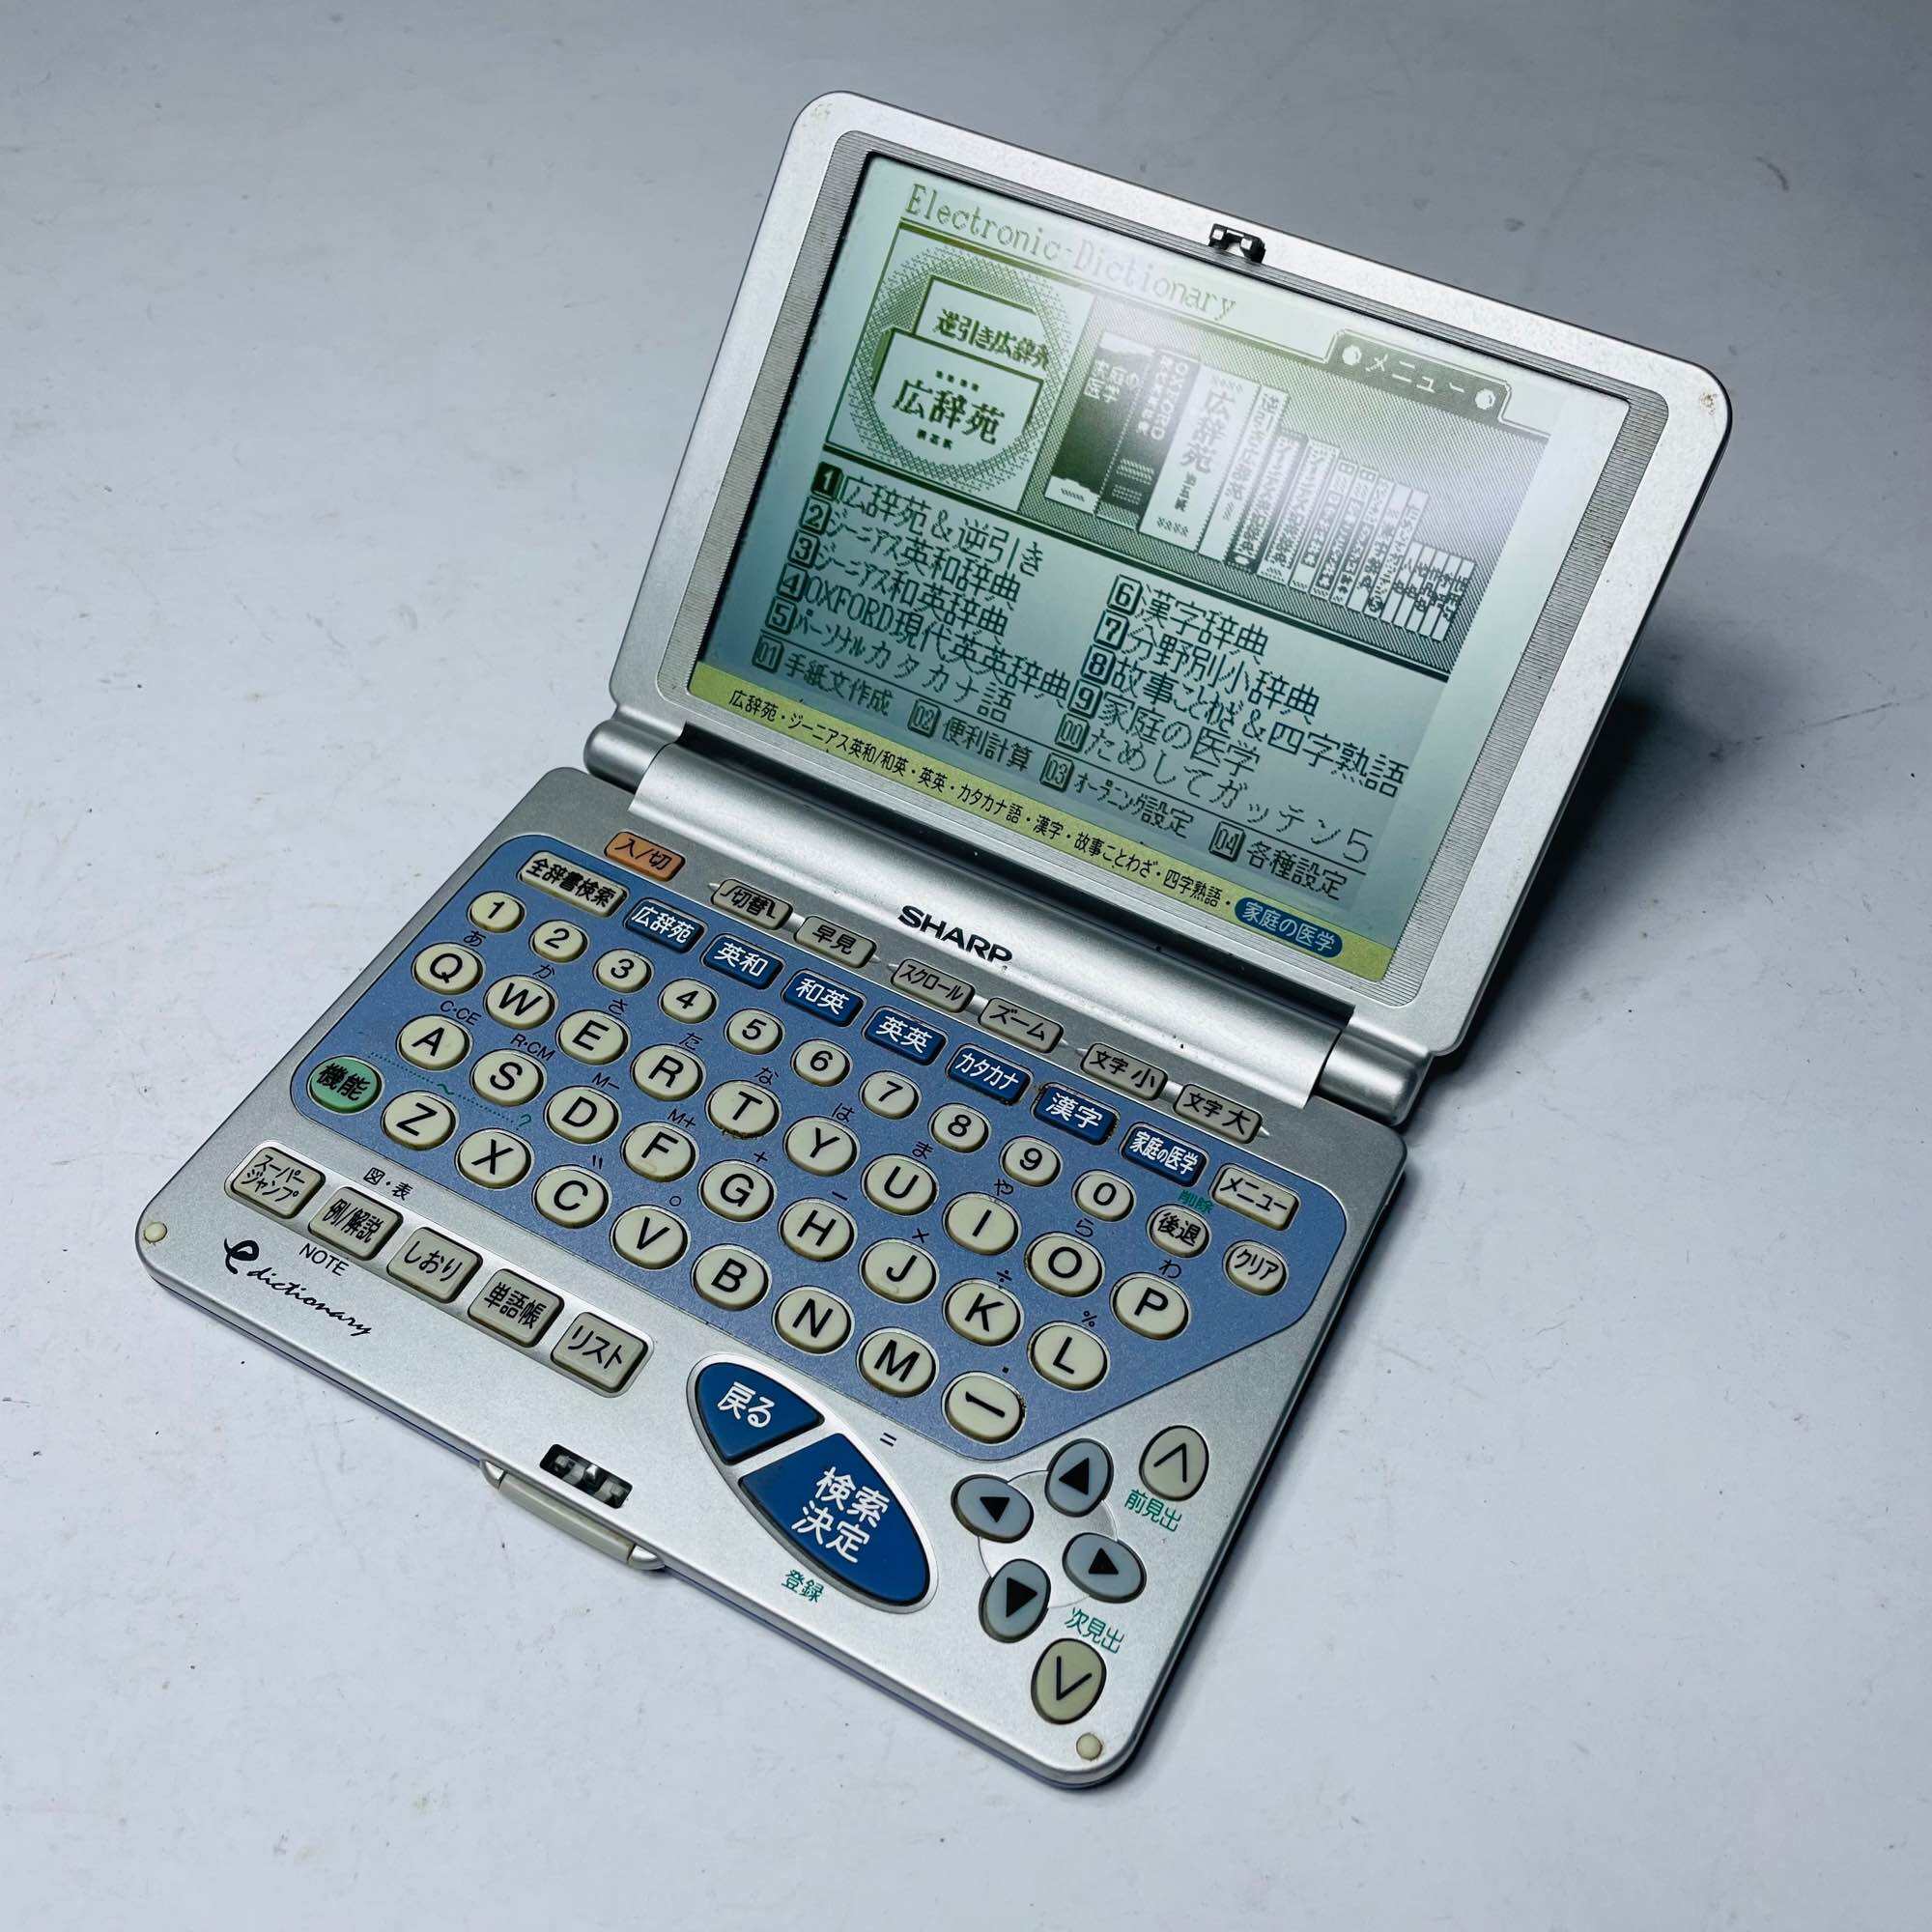 Kim từ điển tiếng Nhật Sharp PW-9500 cũ còn dùng tốt